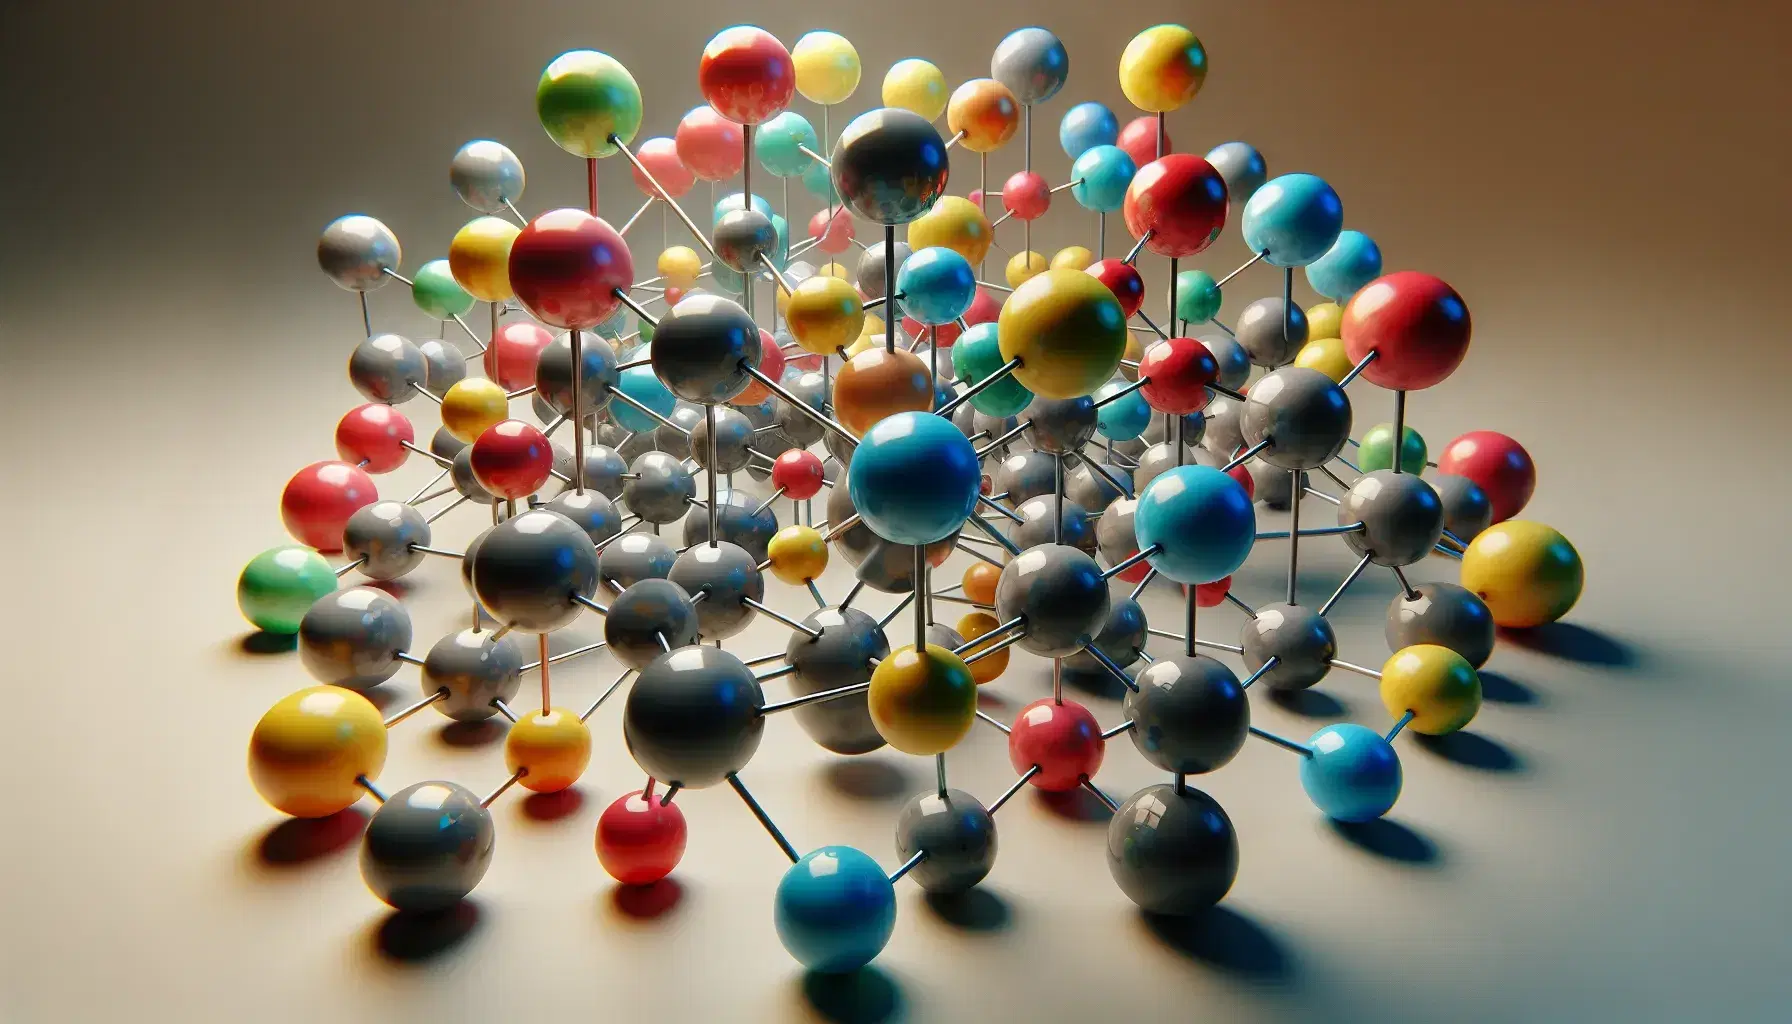 Modelo molecular tridimensional con esferas de colores representando átomos unidos por varillas, sin texto ni sombras distractoras.